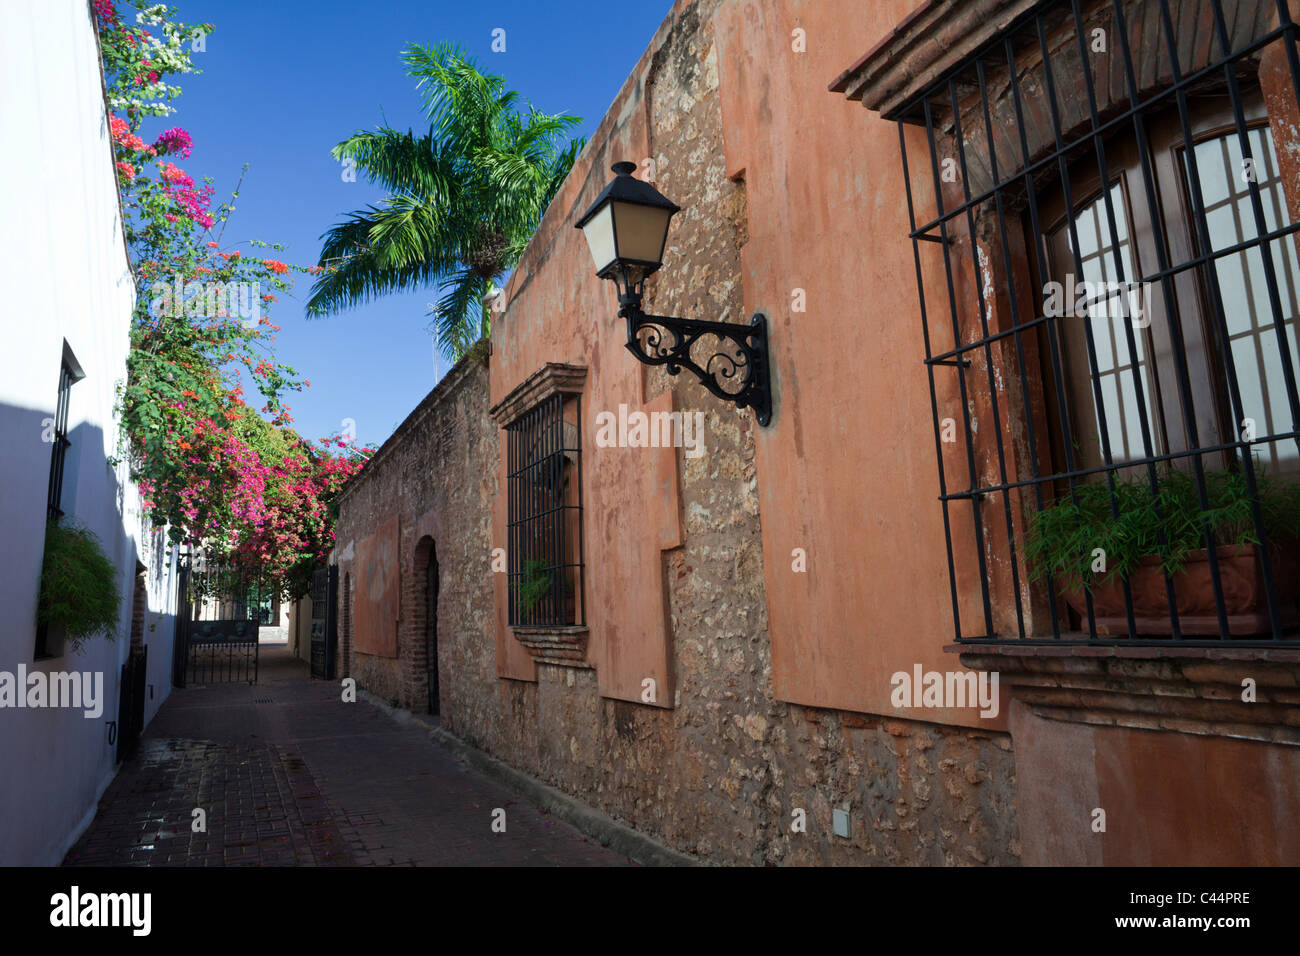 Street Scene at Colonial District, Santo Domingo, Dominican Republic Stock Photo